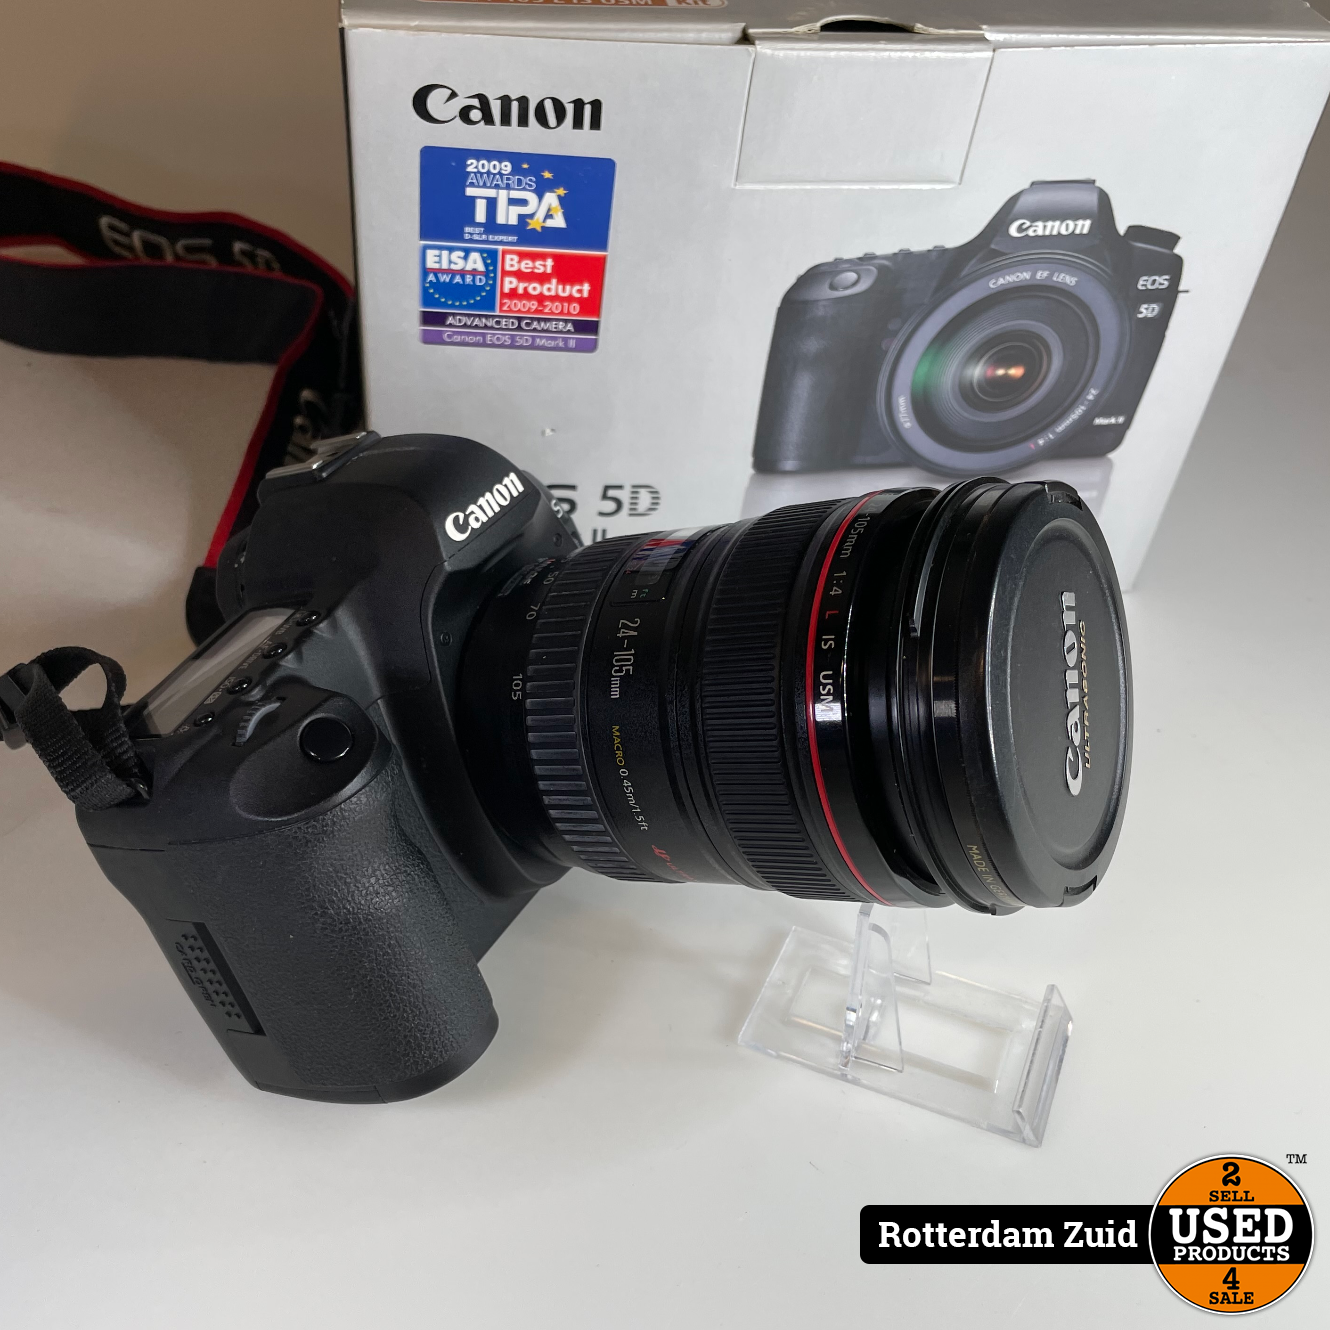 Canon 5D Mark 2 EF 24-105 L IS USM Kit | Nieuwstaat | Met Garantie Used Products Rotterdam Zuid